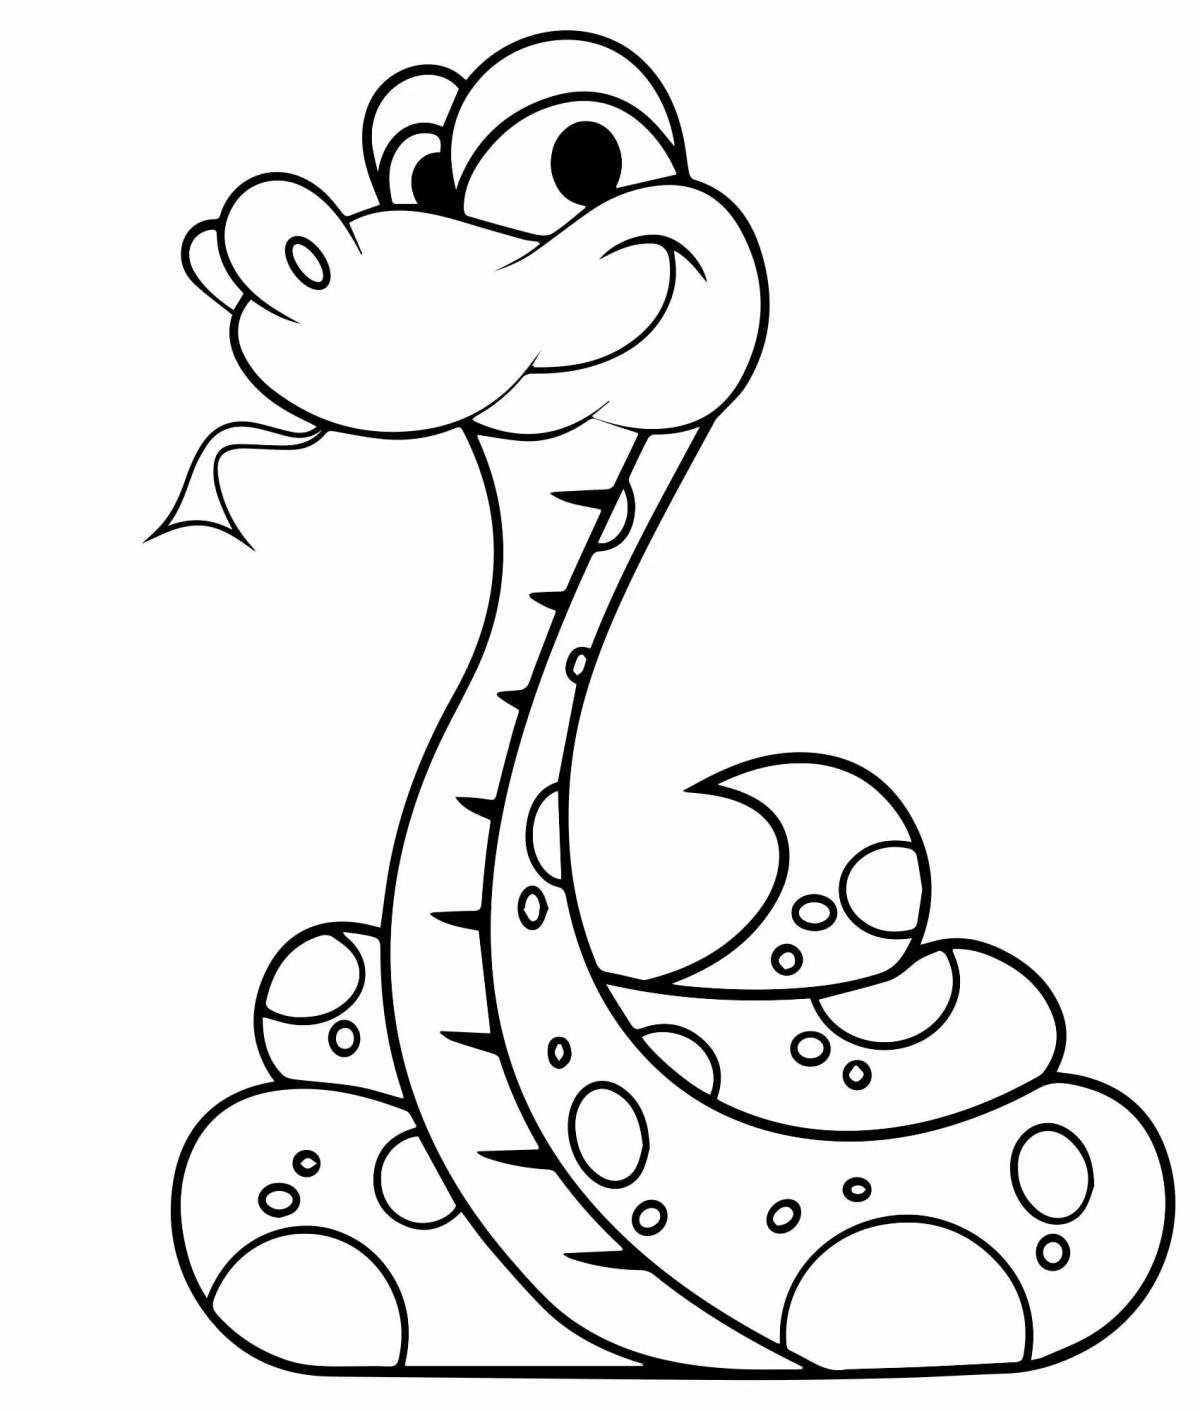 Веселая раскраска змеи для детей 3-4 лет